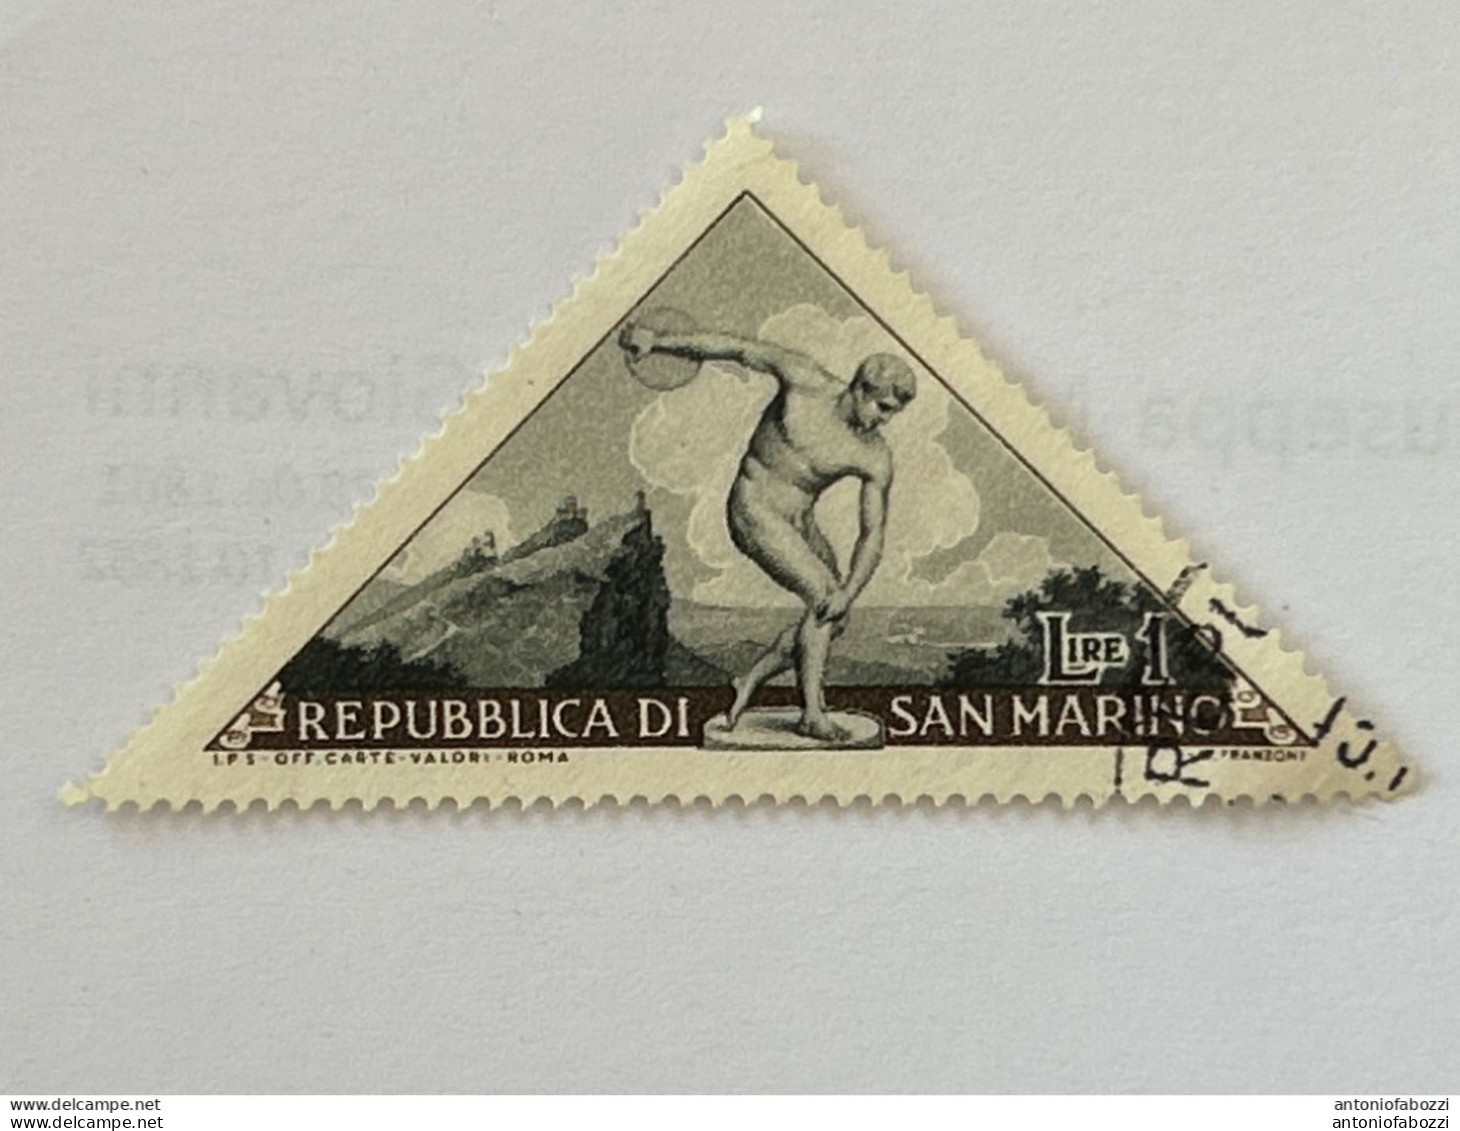 Interessante selezione di tanti francobolli usati/nuovi in ottimo stato (vedi foto), di buon valore filatelico e prezzo